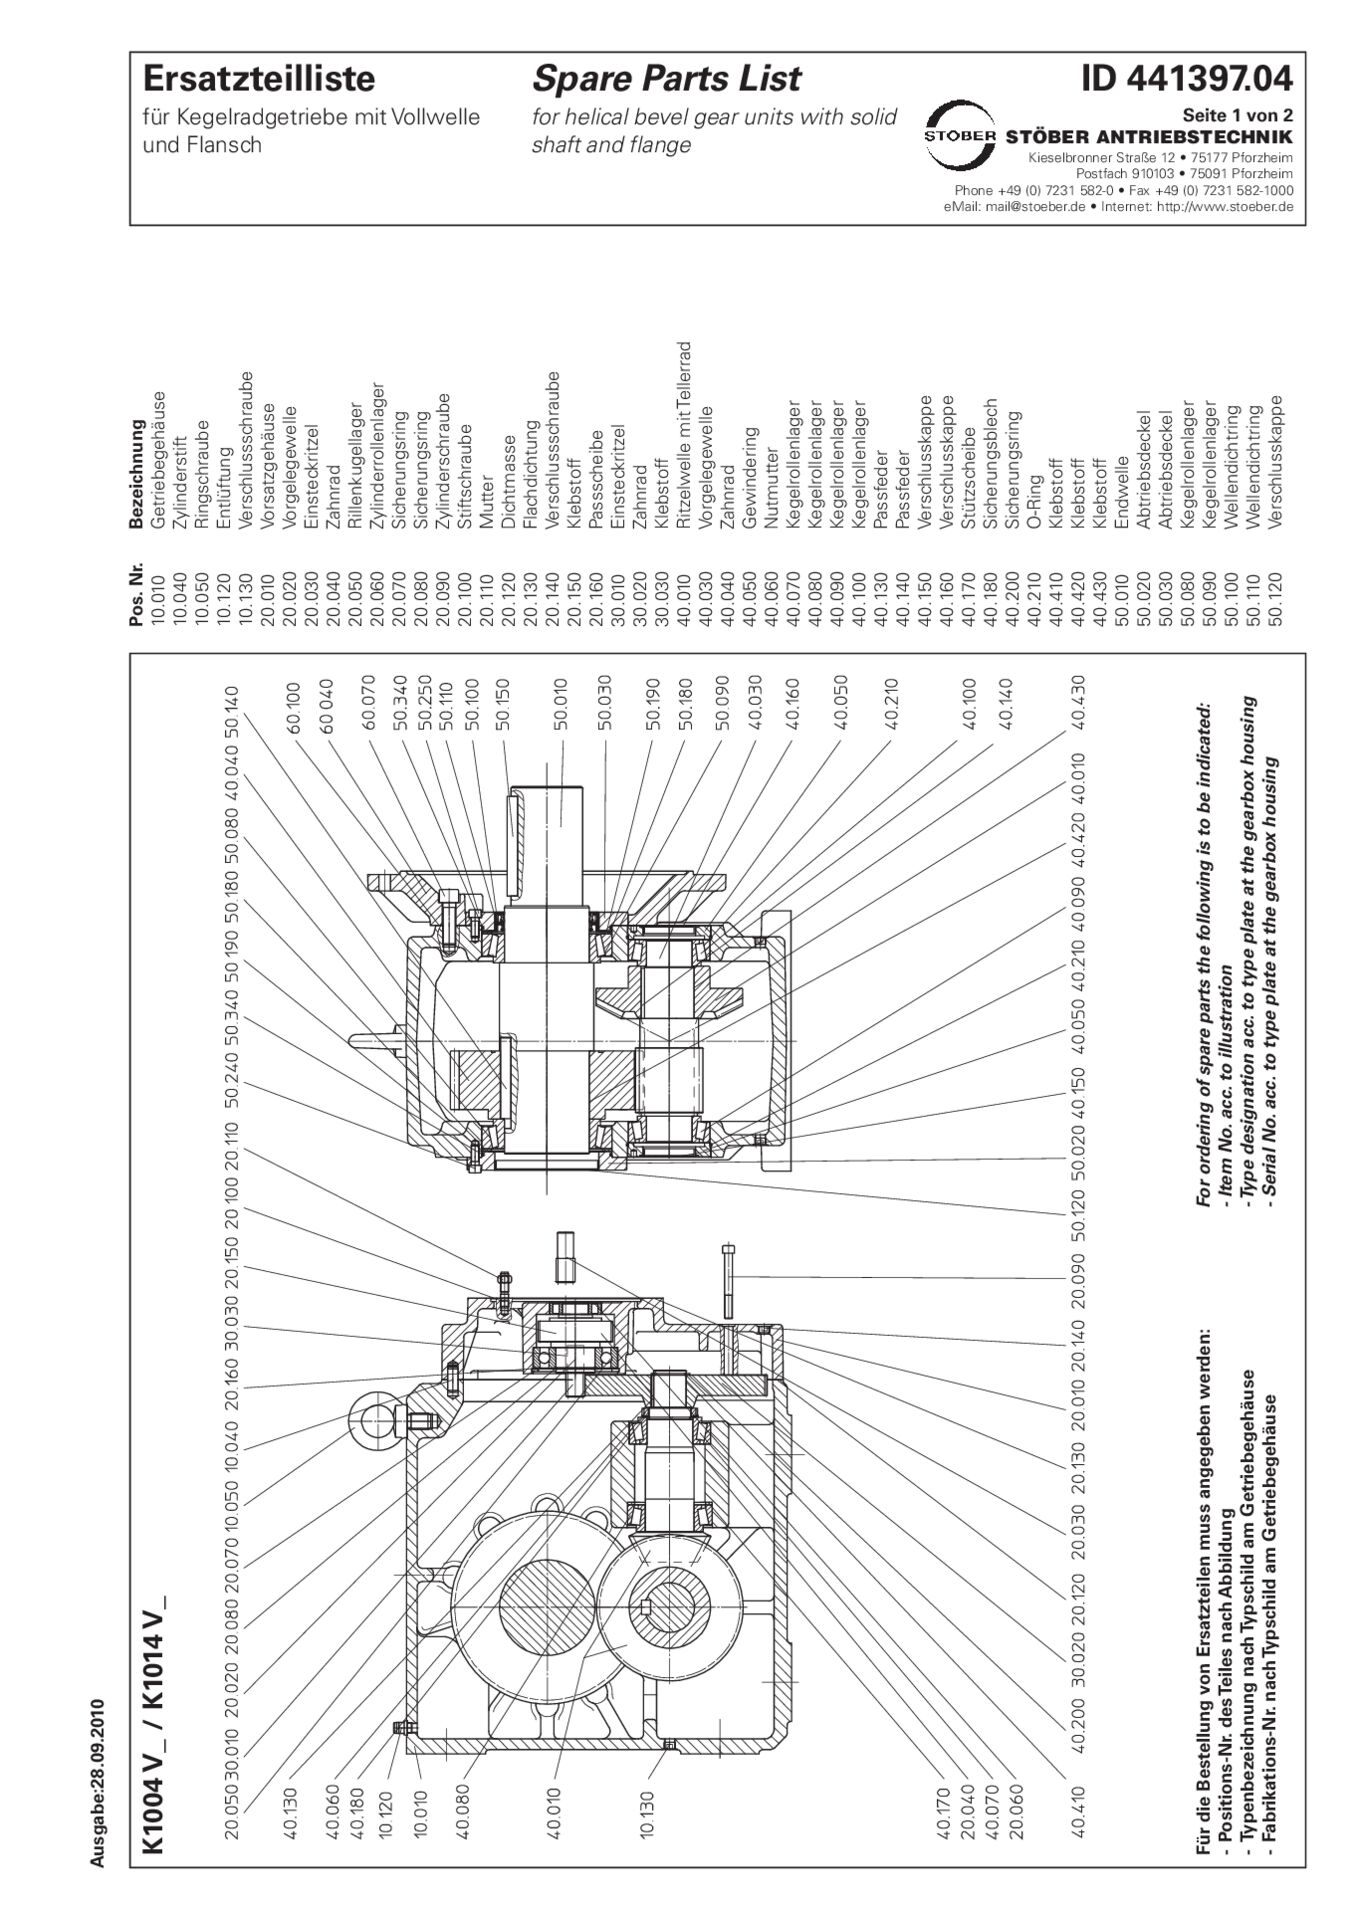 Ersatzteilliste Kegelradgetriebe K1004 K1014 VReplacement parts list helical bevel gear units K1004 K1014 V